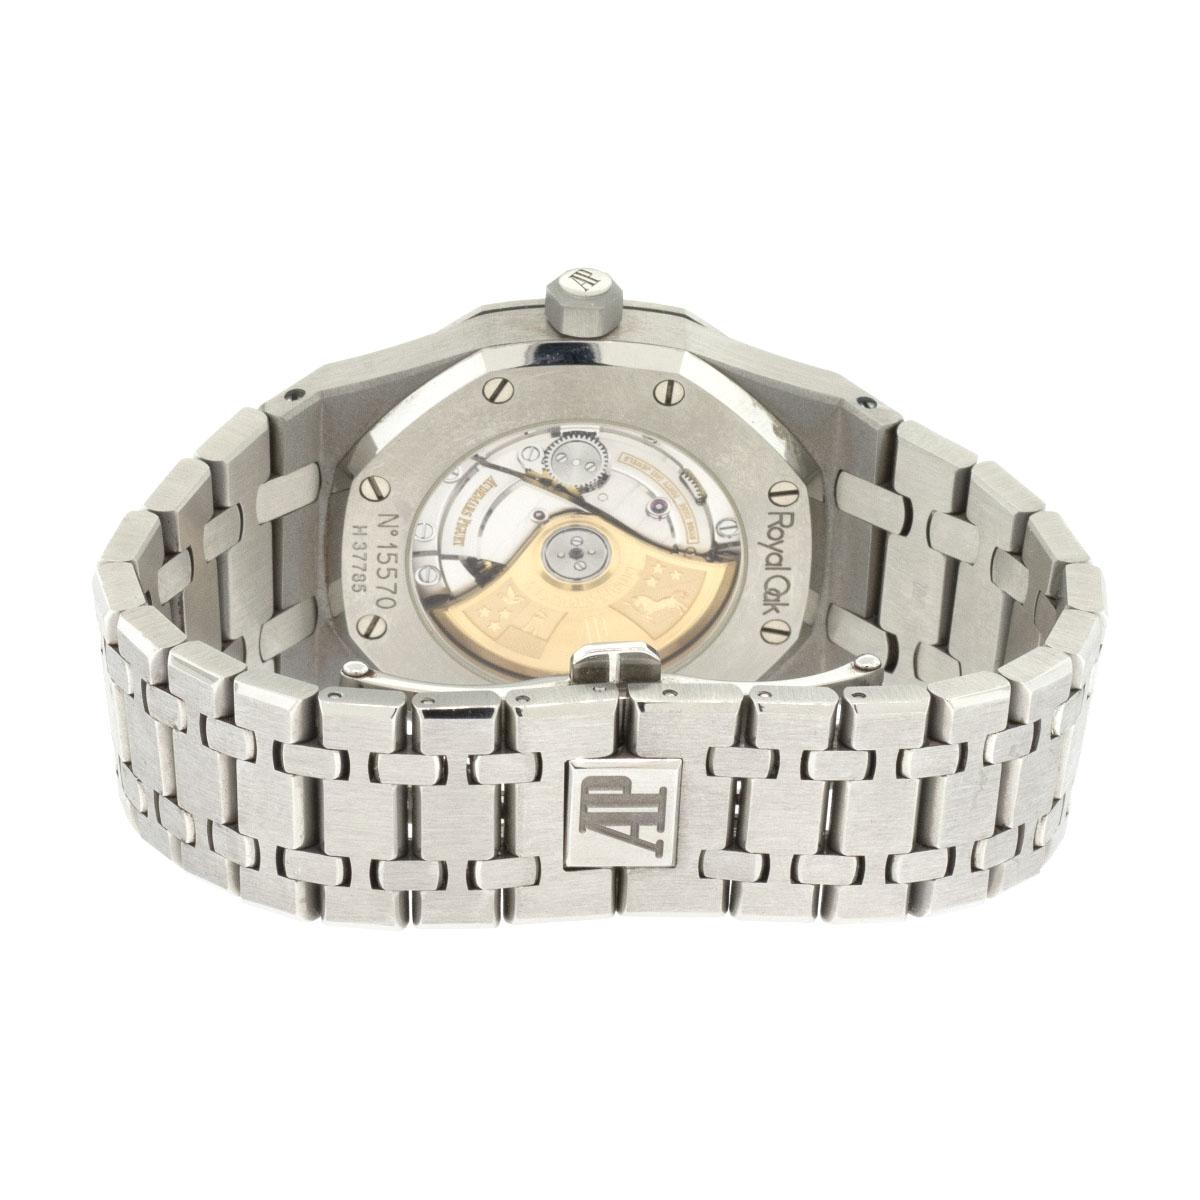 Audemars Piguet 15300 Royal Oak White Dial Watch For Sale 3